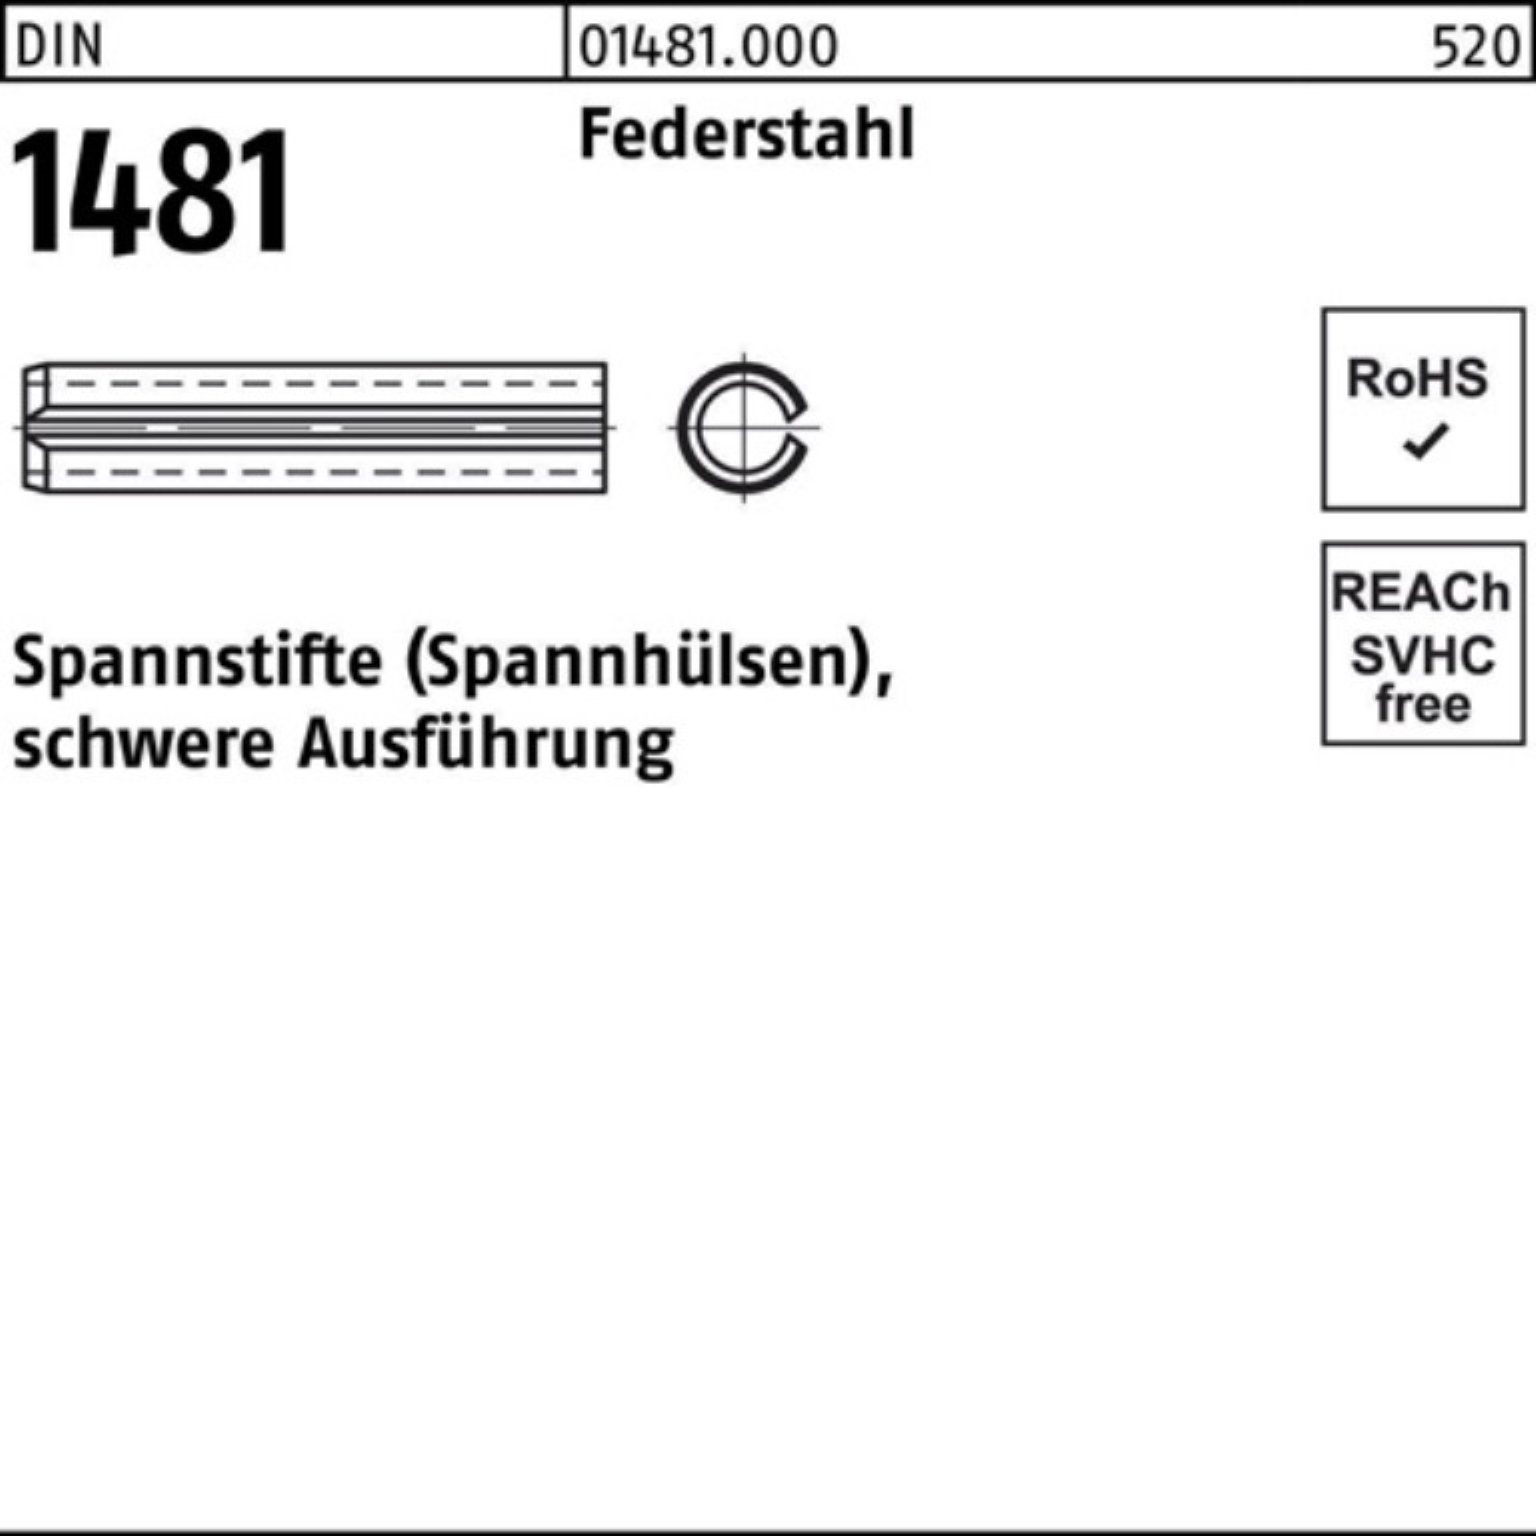 Reyher Spannstift 100er Pack Spannstift DIN 1481 10x 80 Federstahl schwere Ausführung 1